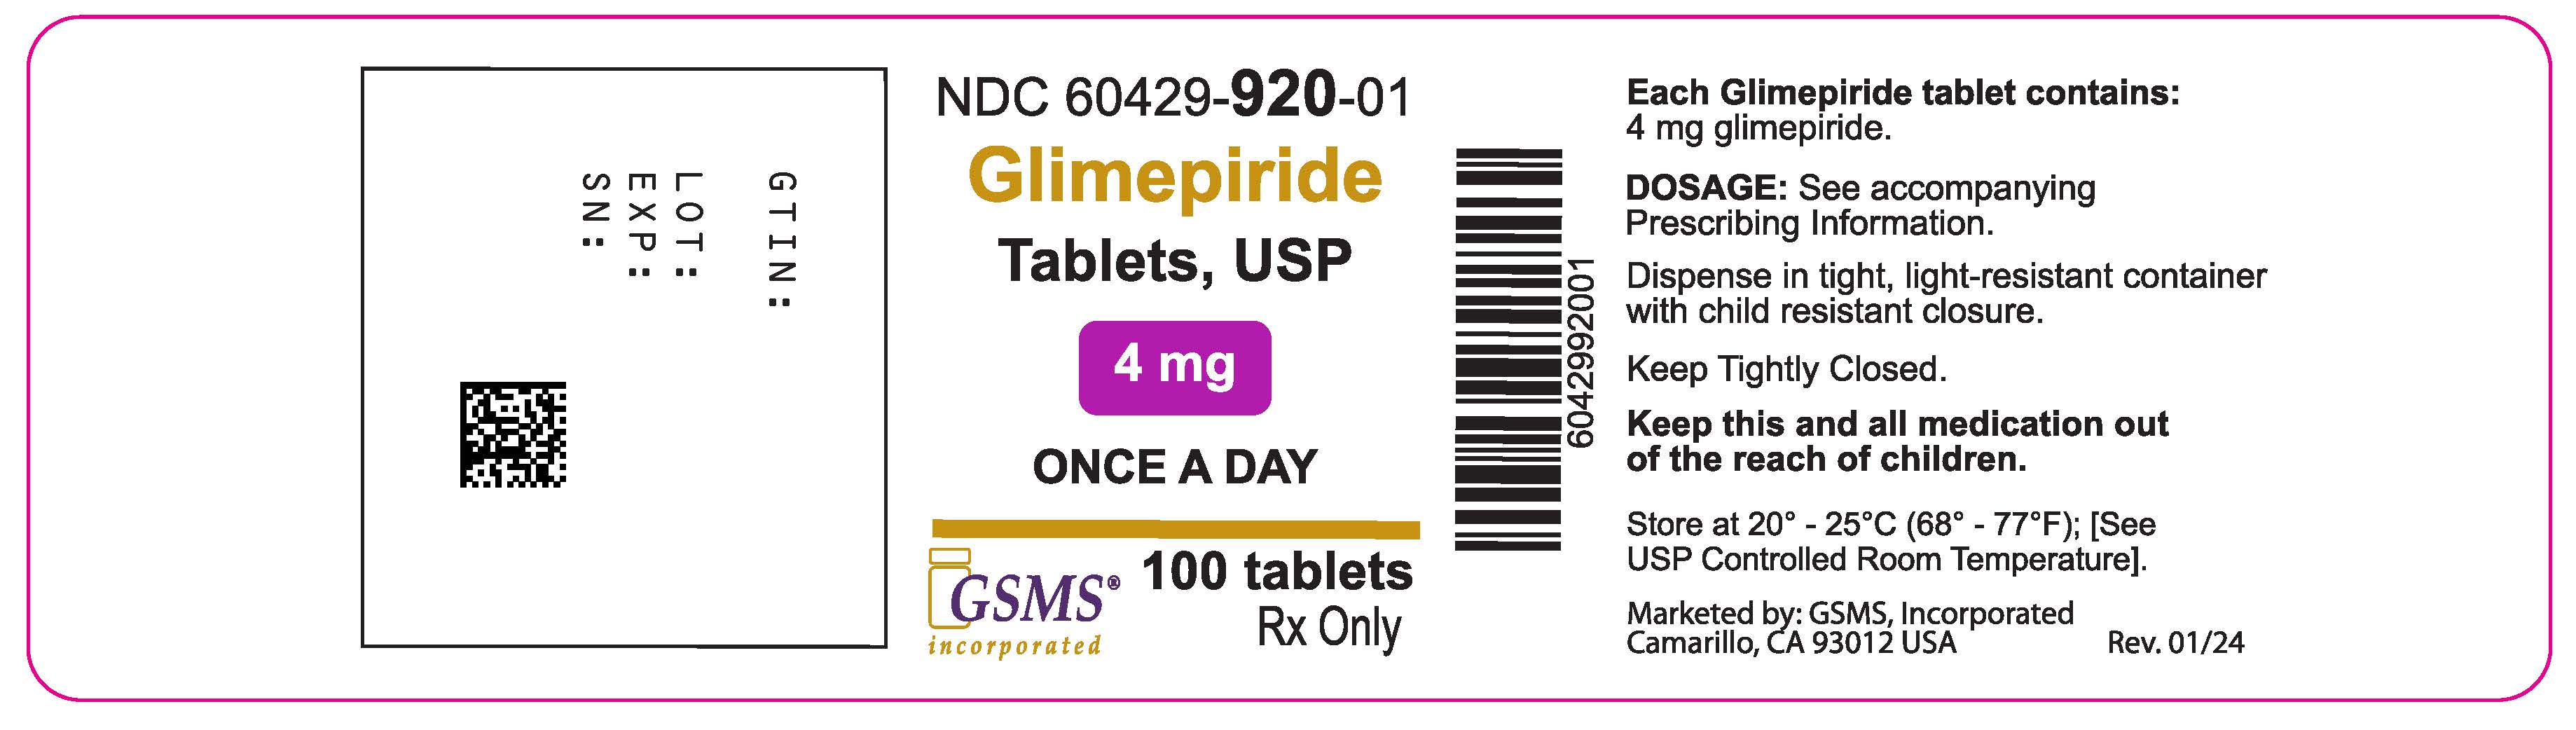 60429-920-01OL - Glimepiride 4 mg - Rev. 0124.jpg